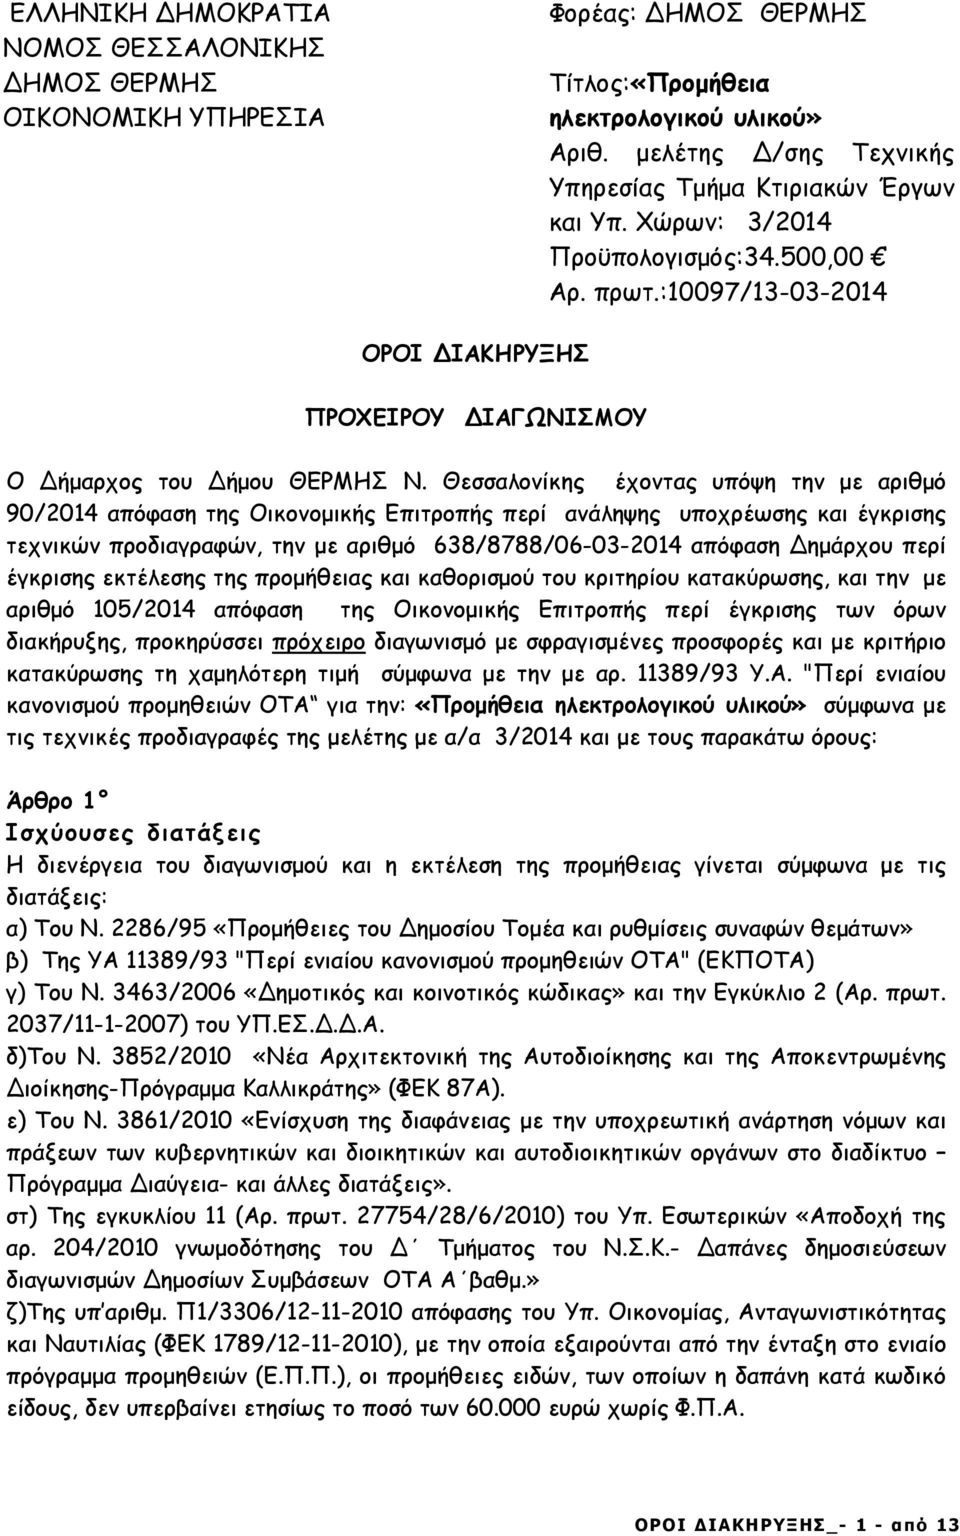 Θεσσαλονίκης έχοντας υπόψη την µε αριθµό 90/2014 απόφαση της Οικονοµικής Επιτροπής περί ανάληψης υποχρέωσης και έγκρισης τεχνικών προδιαγραφών, την µε αριθµό 638/8788/06-03-2014 απόφαση ηµάρχου περί